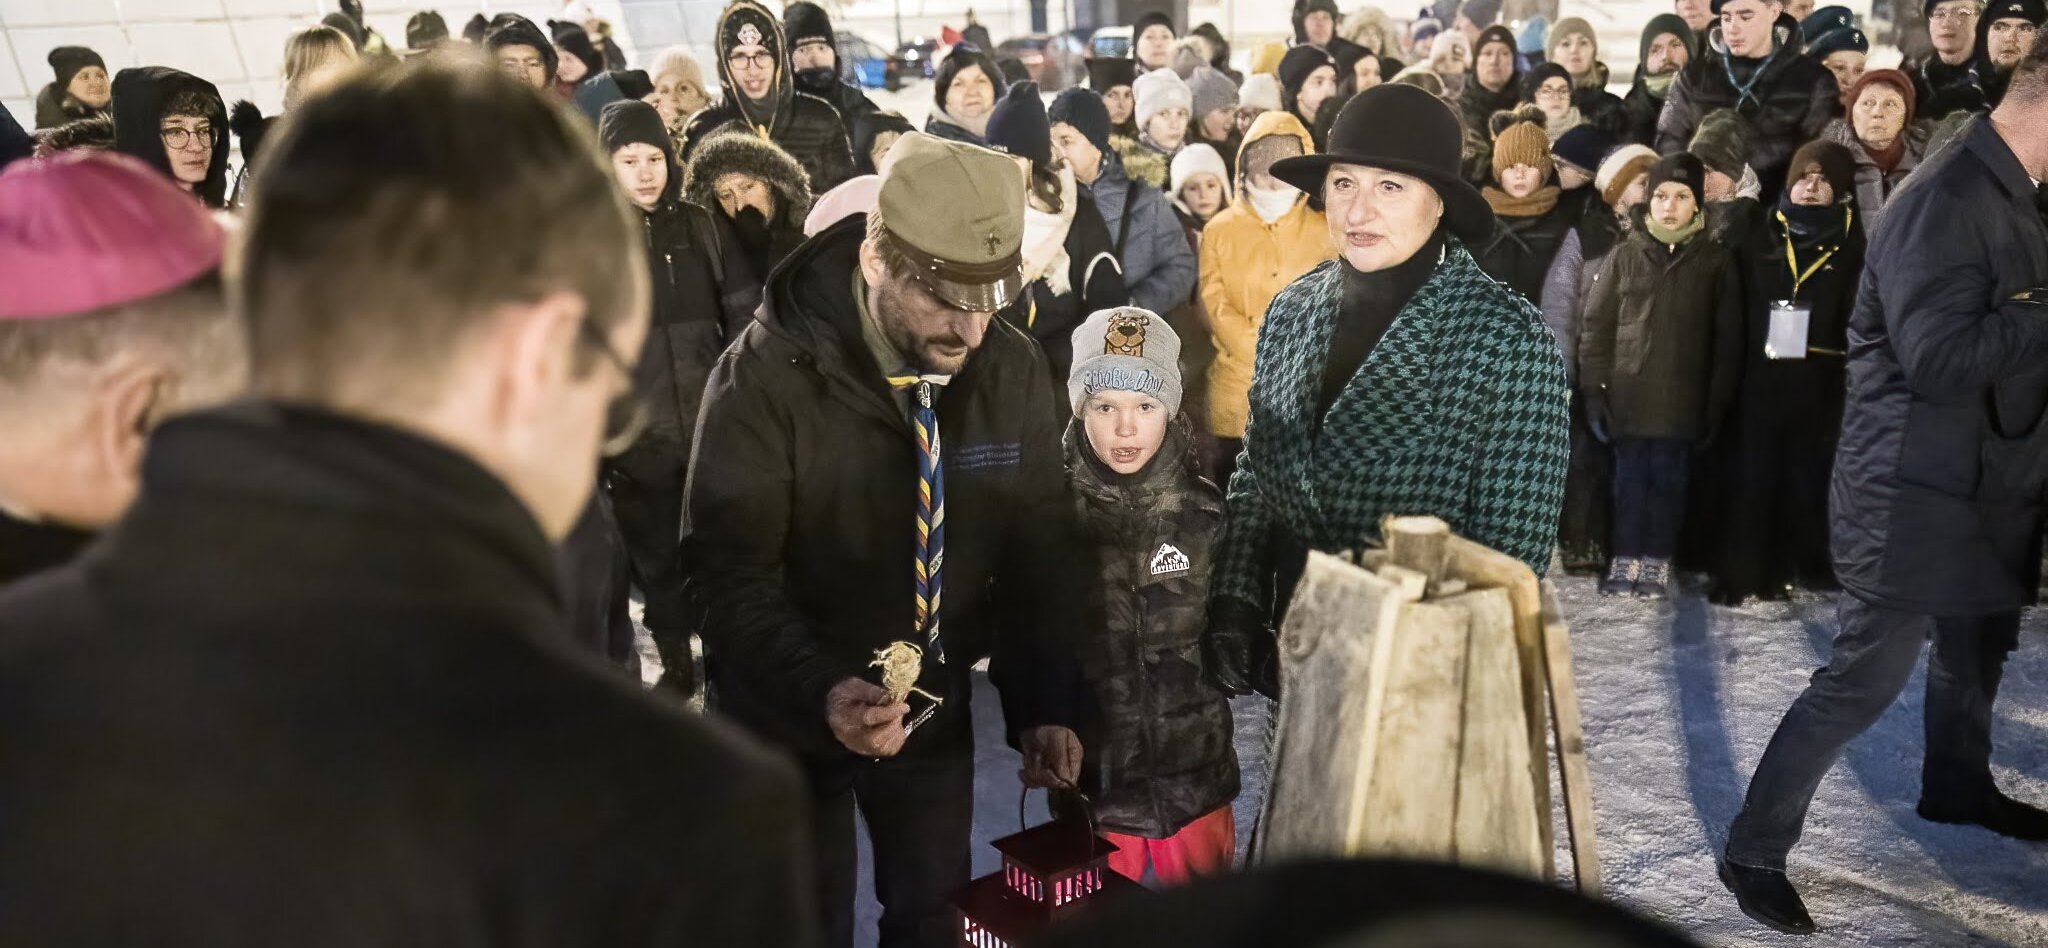 Wiesława Burnos wraz z dzieckiem i harcmistrzem stoja w tłumie na placu